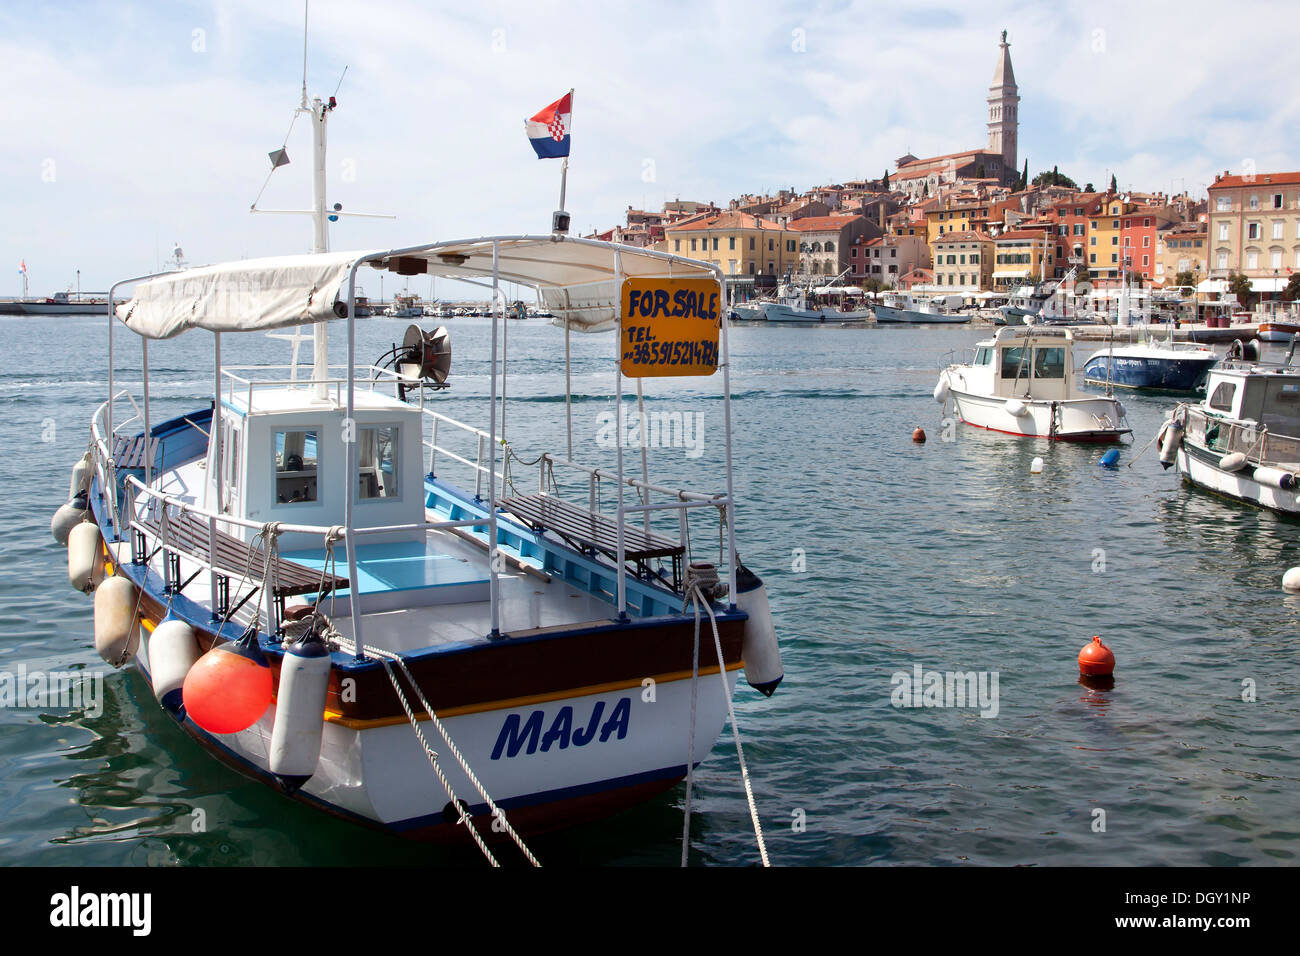 Sign, 'For sale', on a boat in the port of Rovinj, Rovingo, Istria, Croatia, Europe, Rovinj, Croatia Stock Photo